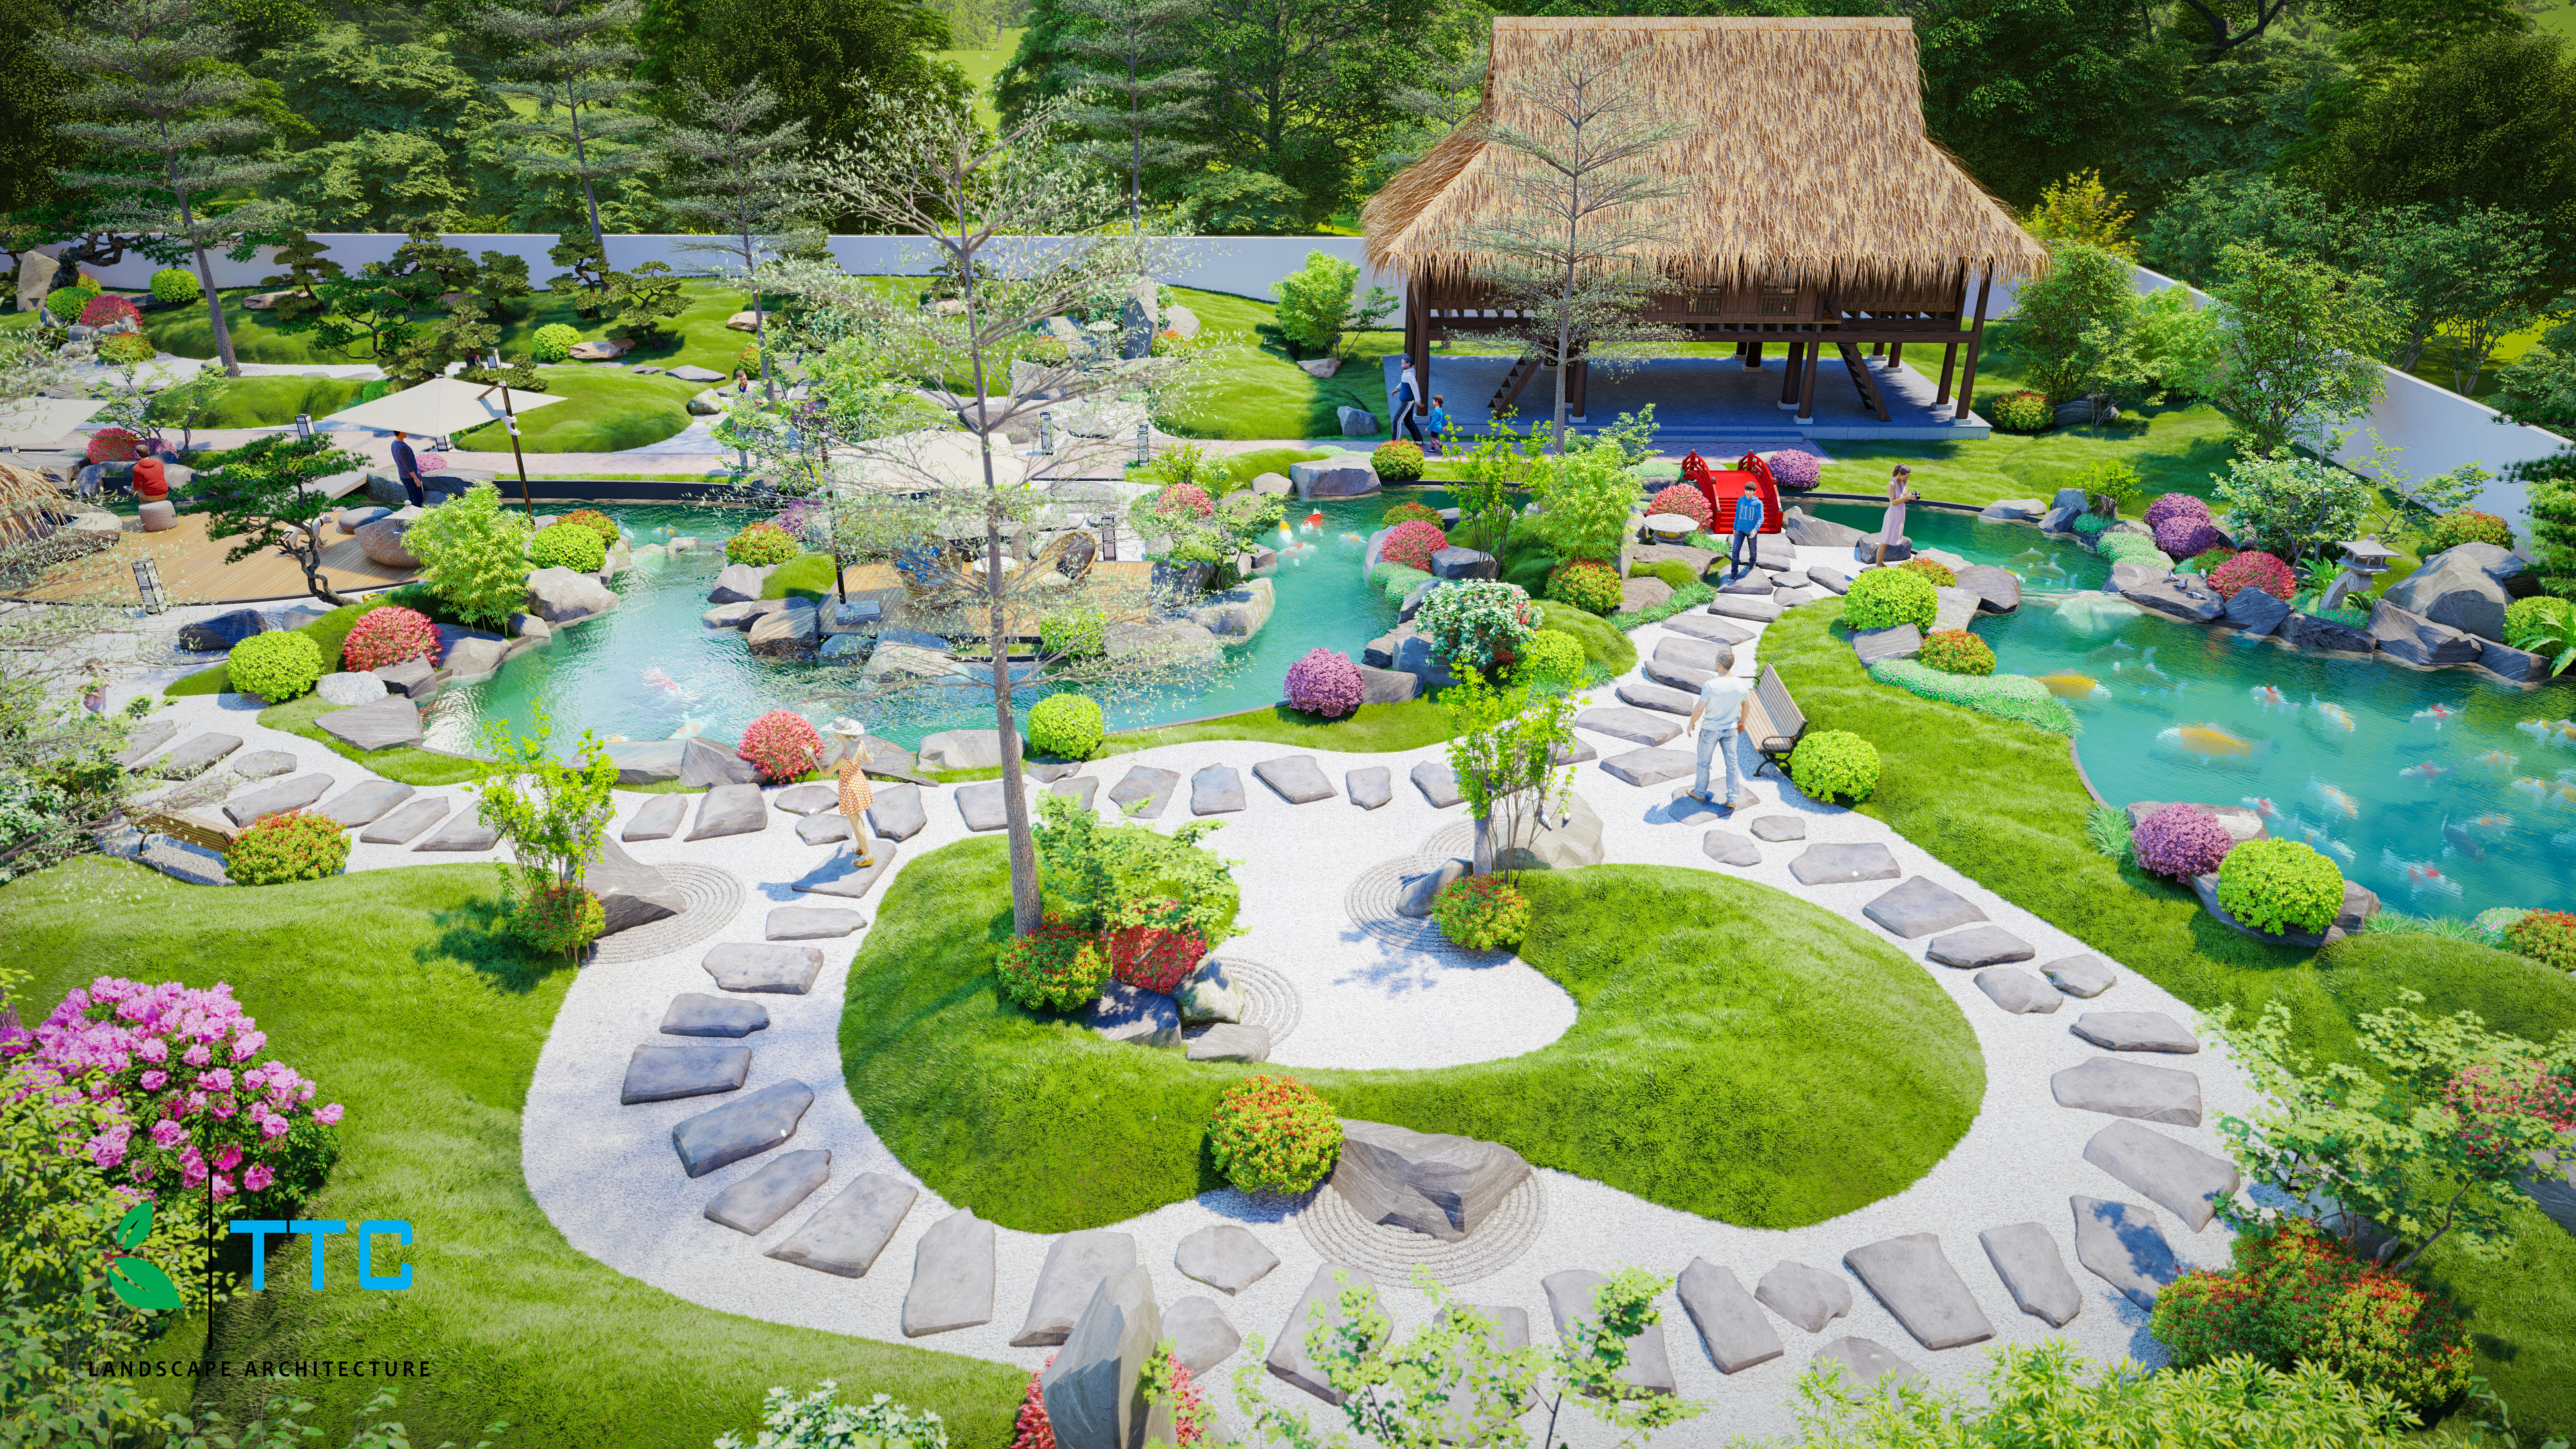 Thiết kế Resort tại Đắk Lắk SÂN VƯỜN NHẬT BẢN ĐAKLAK 1647099457 7